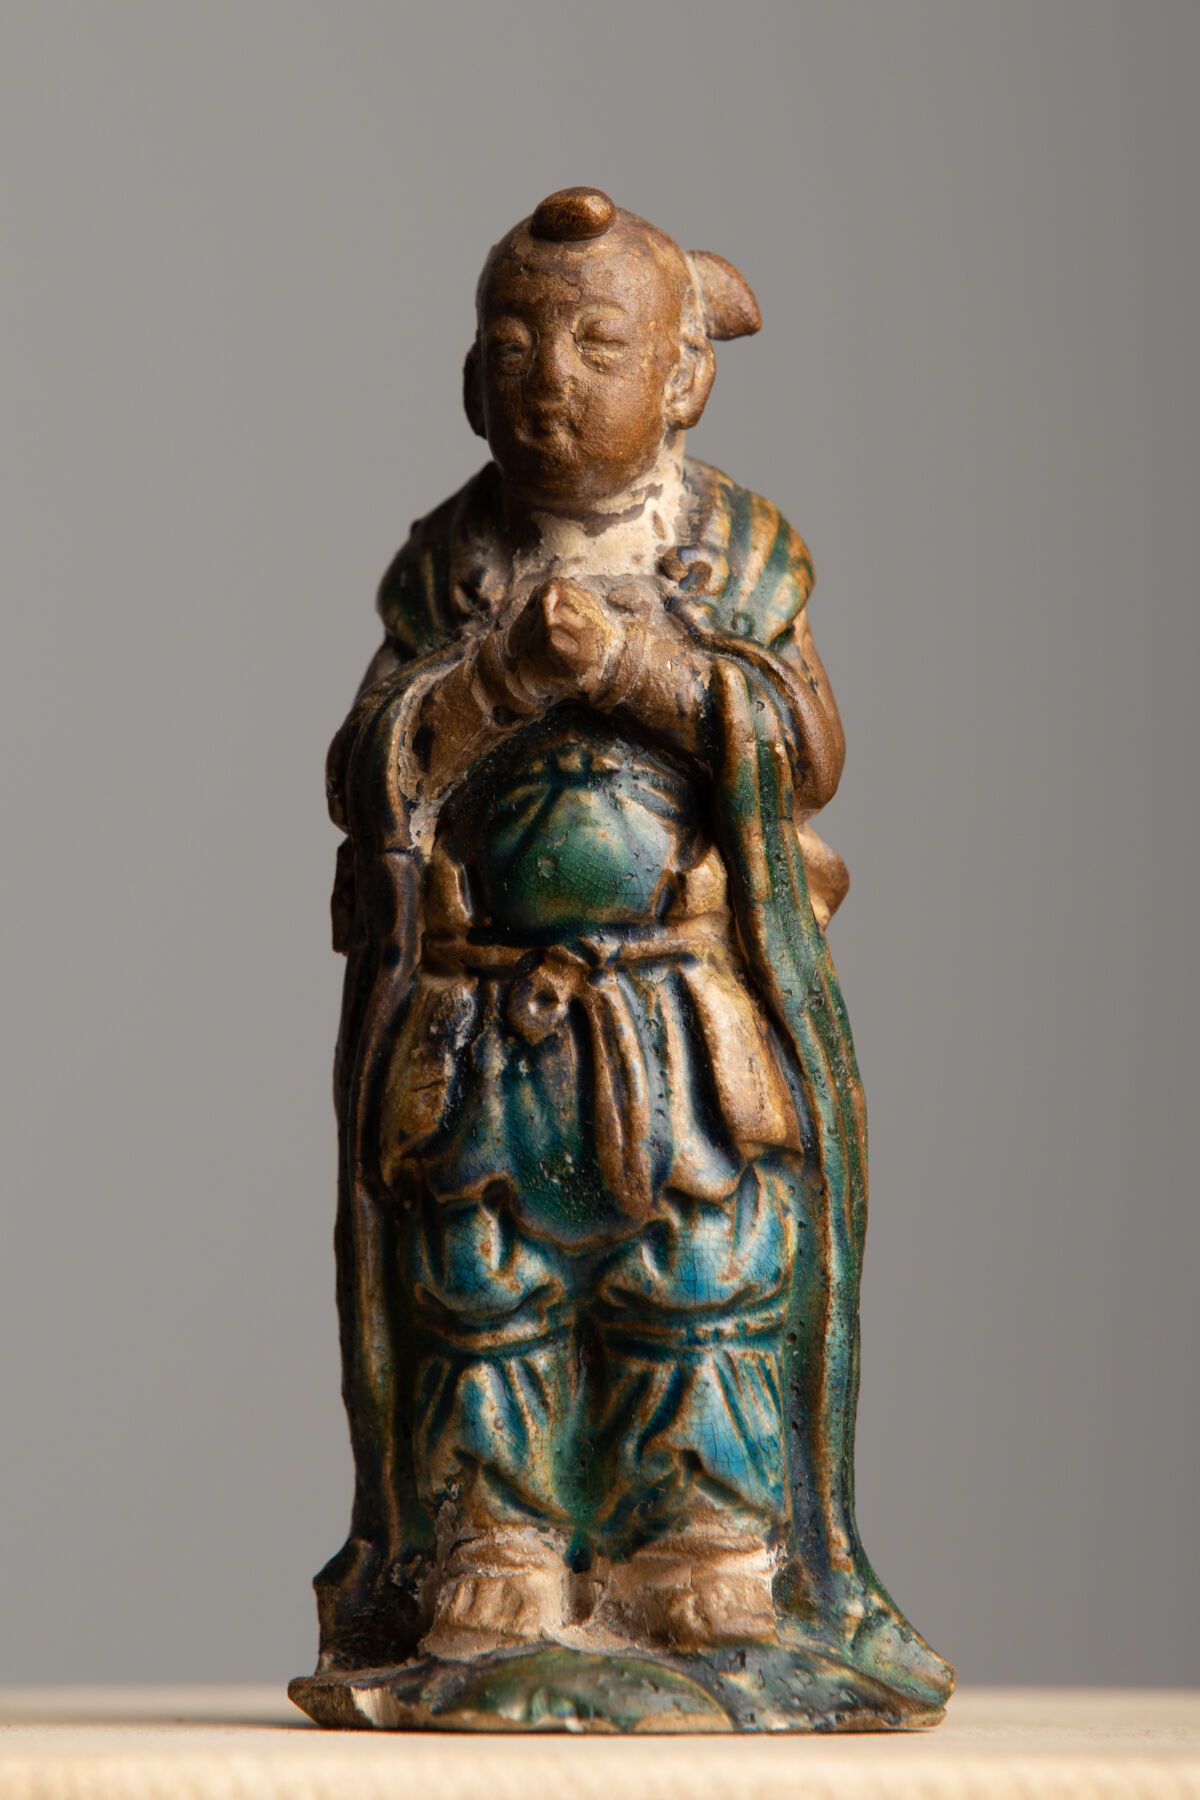 Null 中国，明朝（1368-1644）。
绿松石釉炻器雕像，双手紧握。
高_10.7厘米，底座上有一个缺口